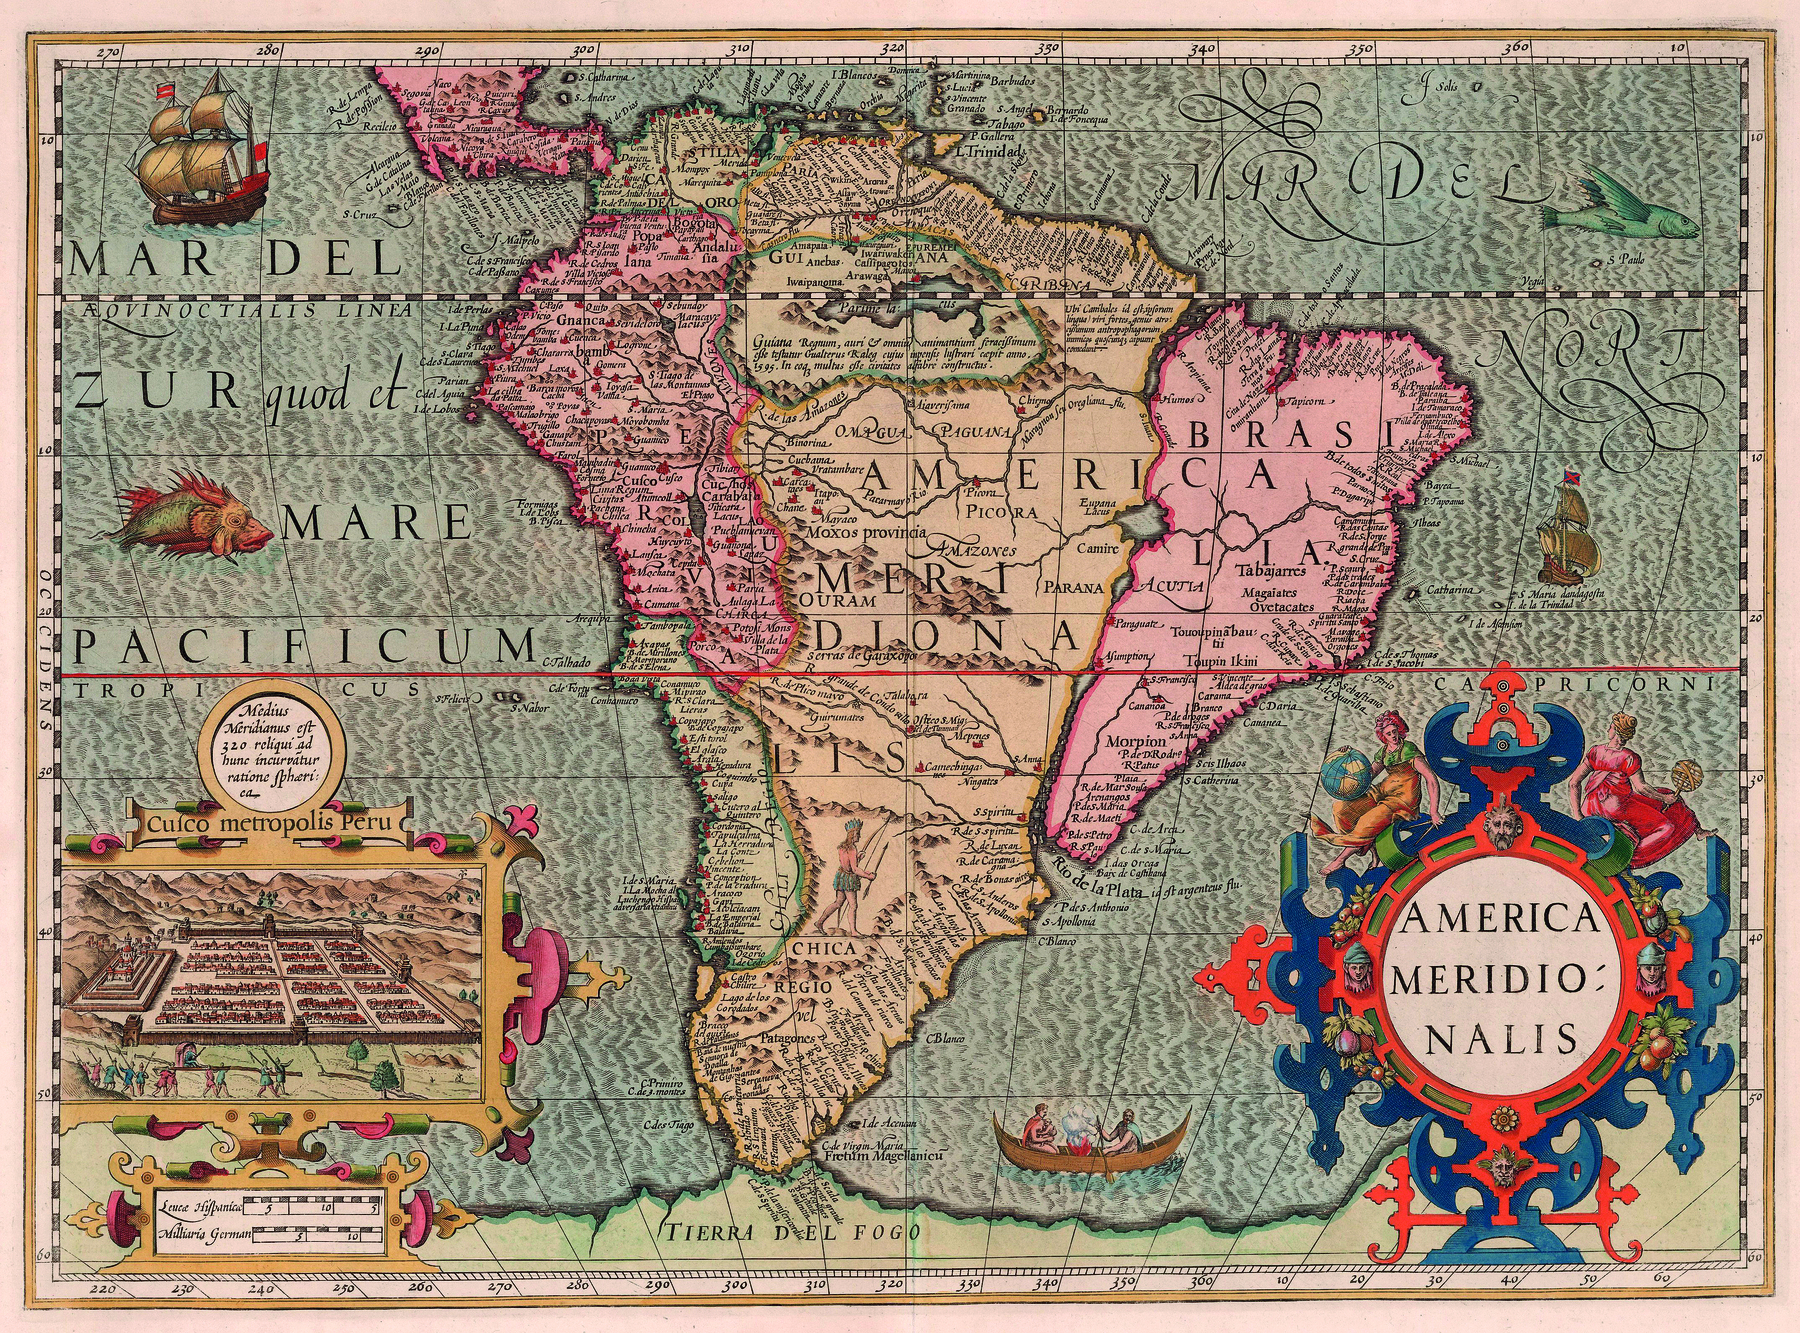 Mapa. Representação do território da América do Sul, banhado por oceanos à leste e à oeste. Sobre a área terrestre há nomes de cidades e caminhos fluviais. Pelo oceano, há imagens de embarcações, navios e animais marinhos.